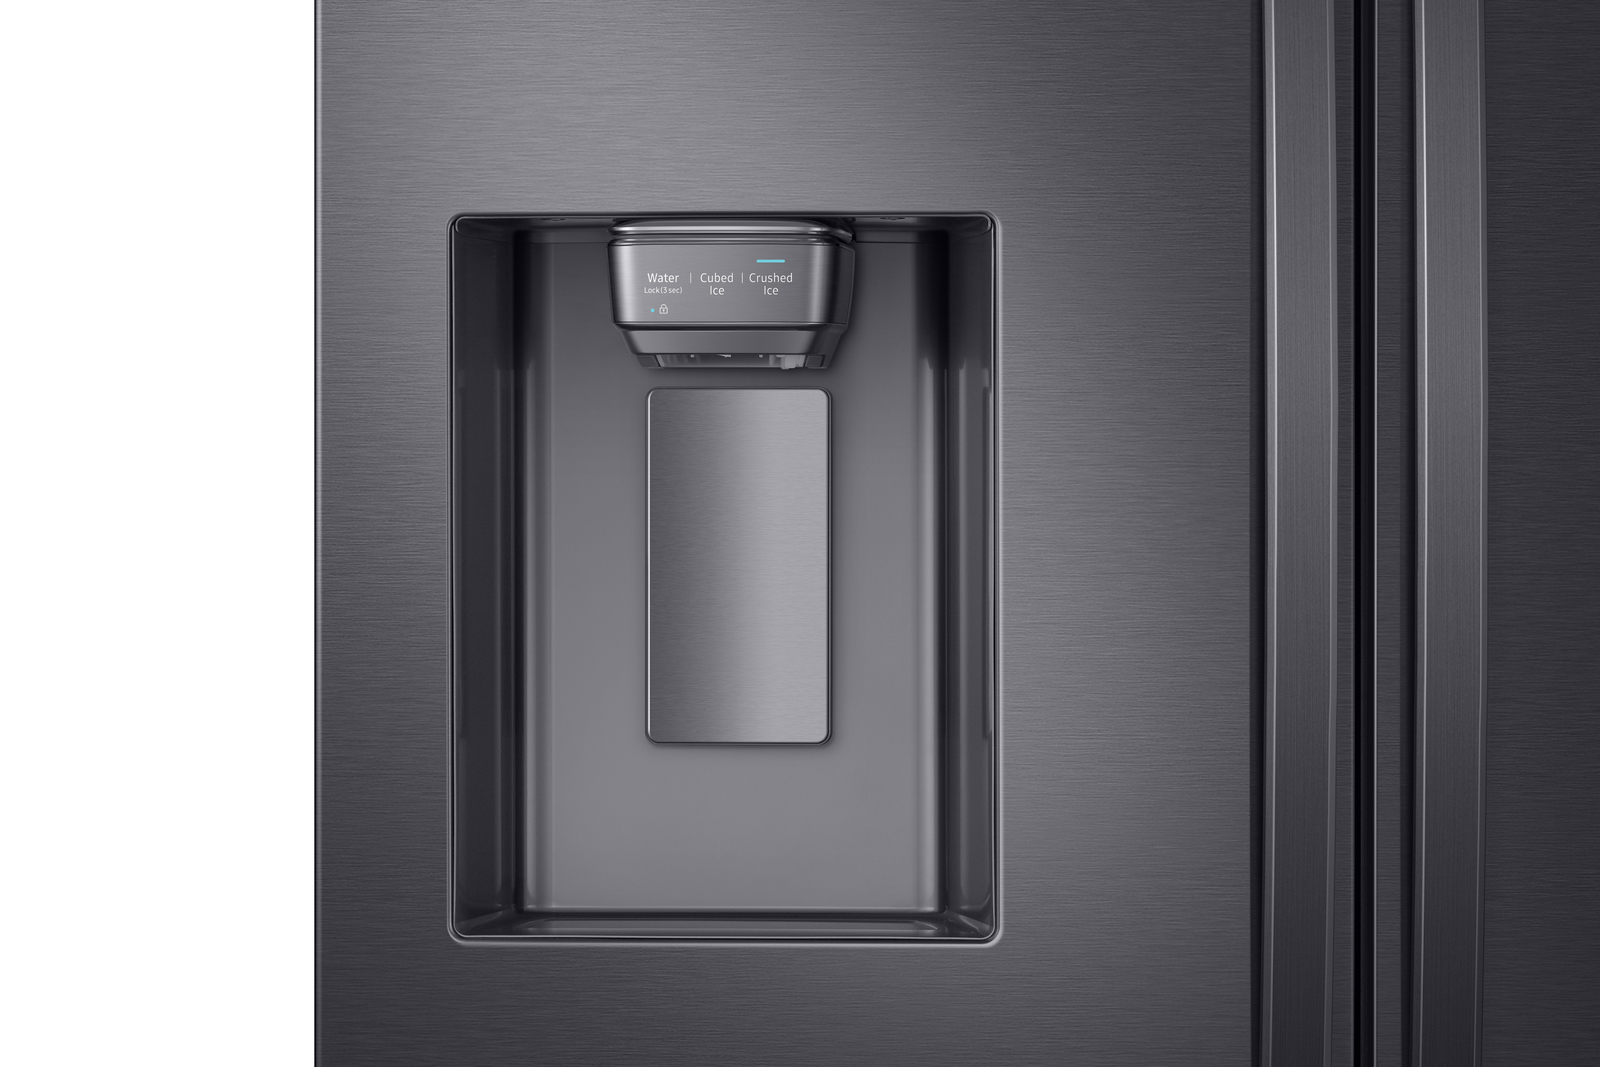 Réfrigérateur Samsung No Frost 420 litres RT42K5152S8 